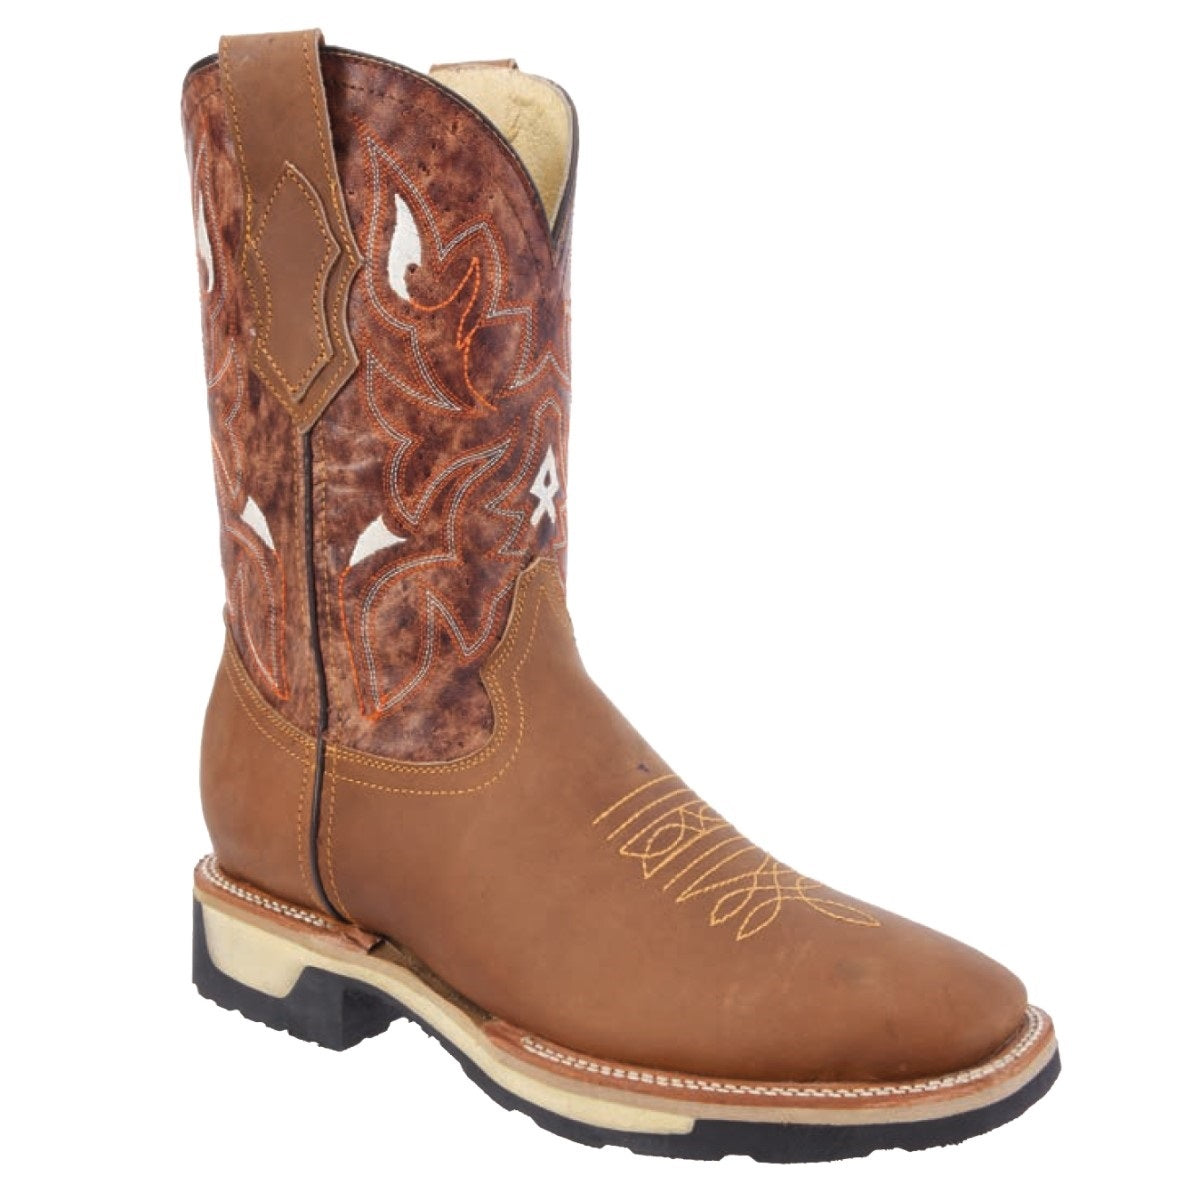 Botas Vaqueras TM-WD0426-426 Brown - Western Boots